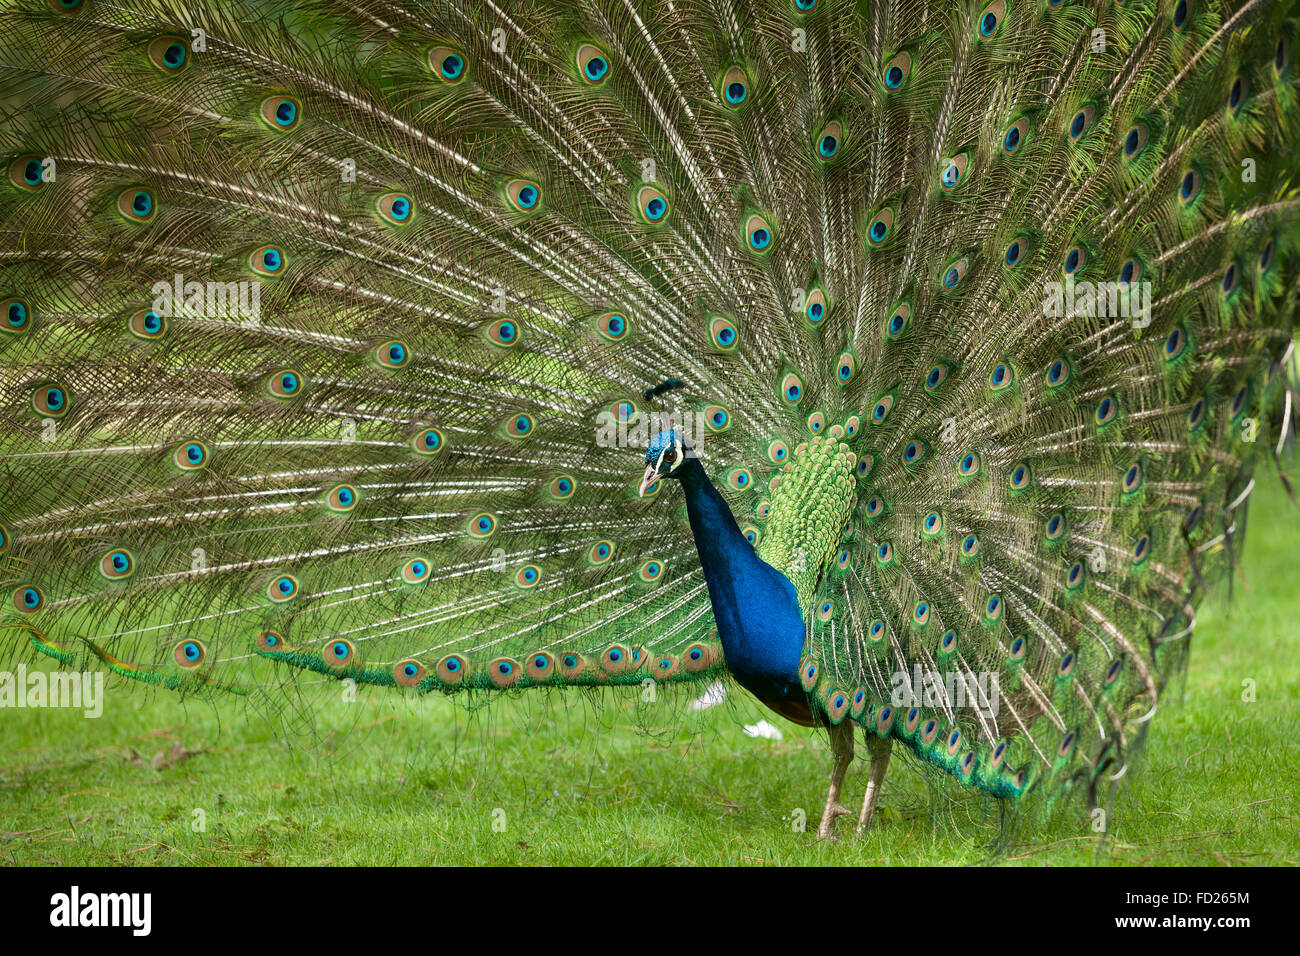 L'Europe, l'Allemagne, Peacock, paons commun (lat. Pavo cristatus) affichage de la queue, à l'Forstbotanischer Garten, un arboretum et Banque D'Images